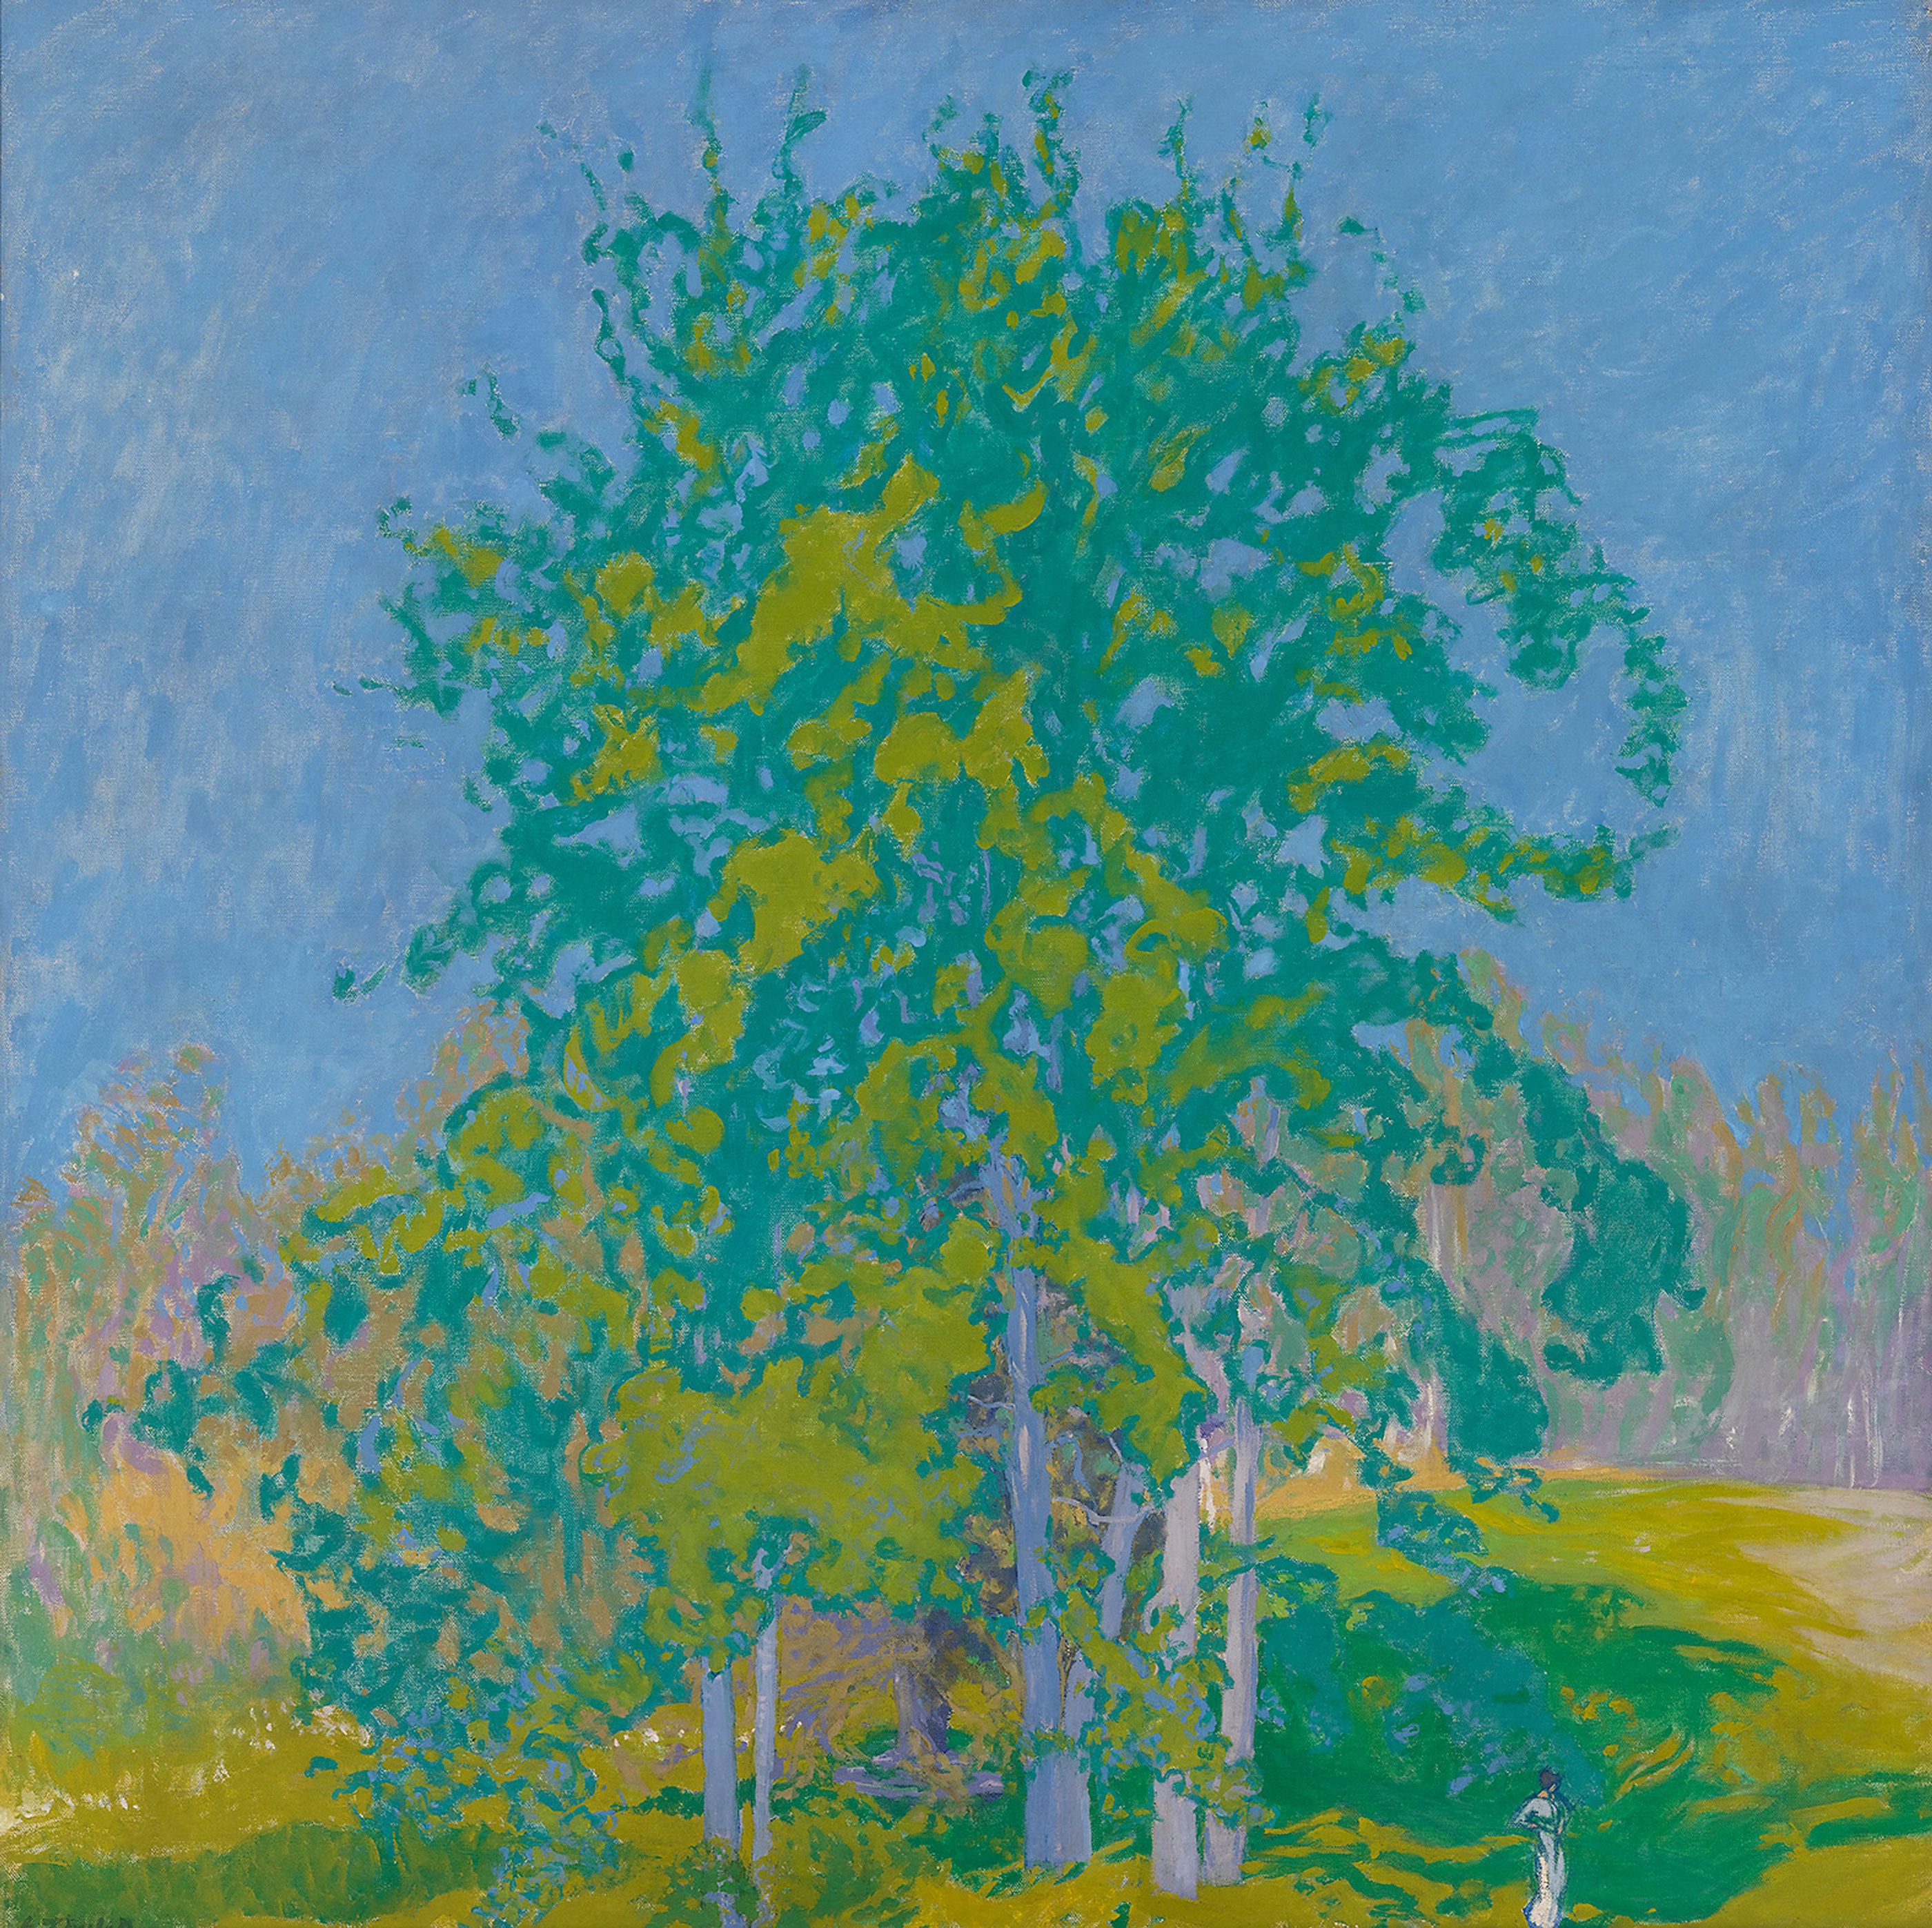 装飾的風景 by Ellen Thesleff - 1910年 - 101 × 101 cm 